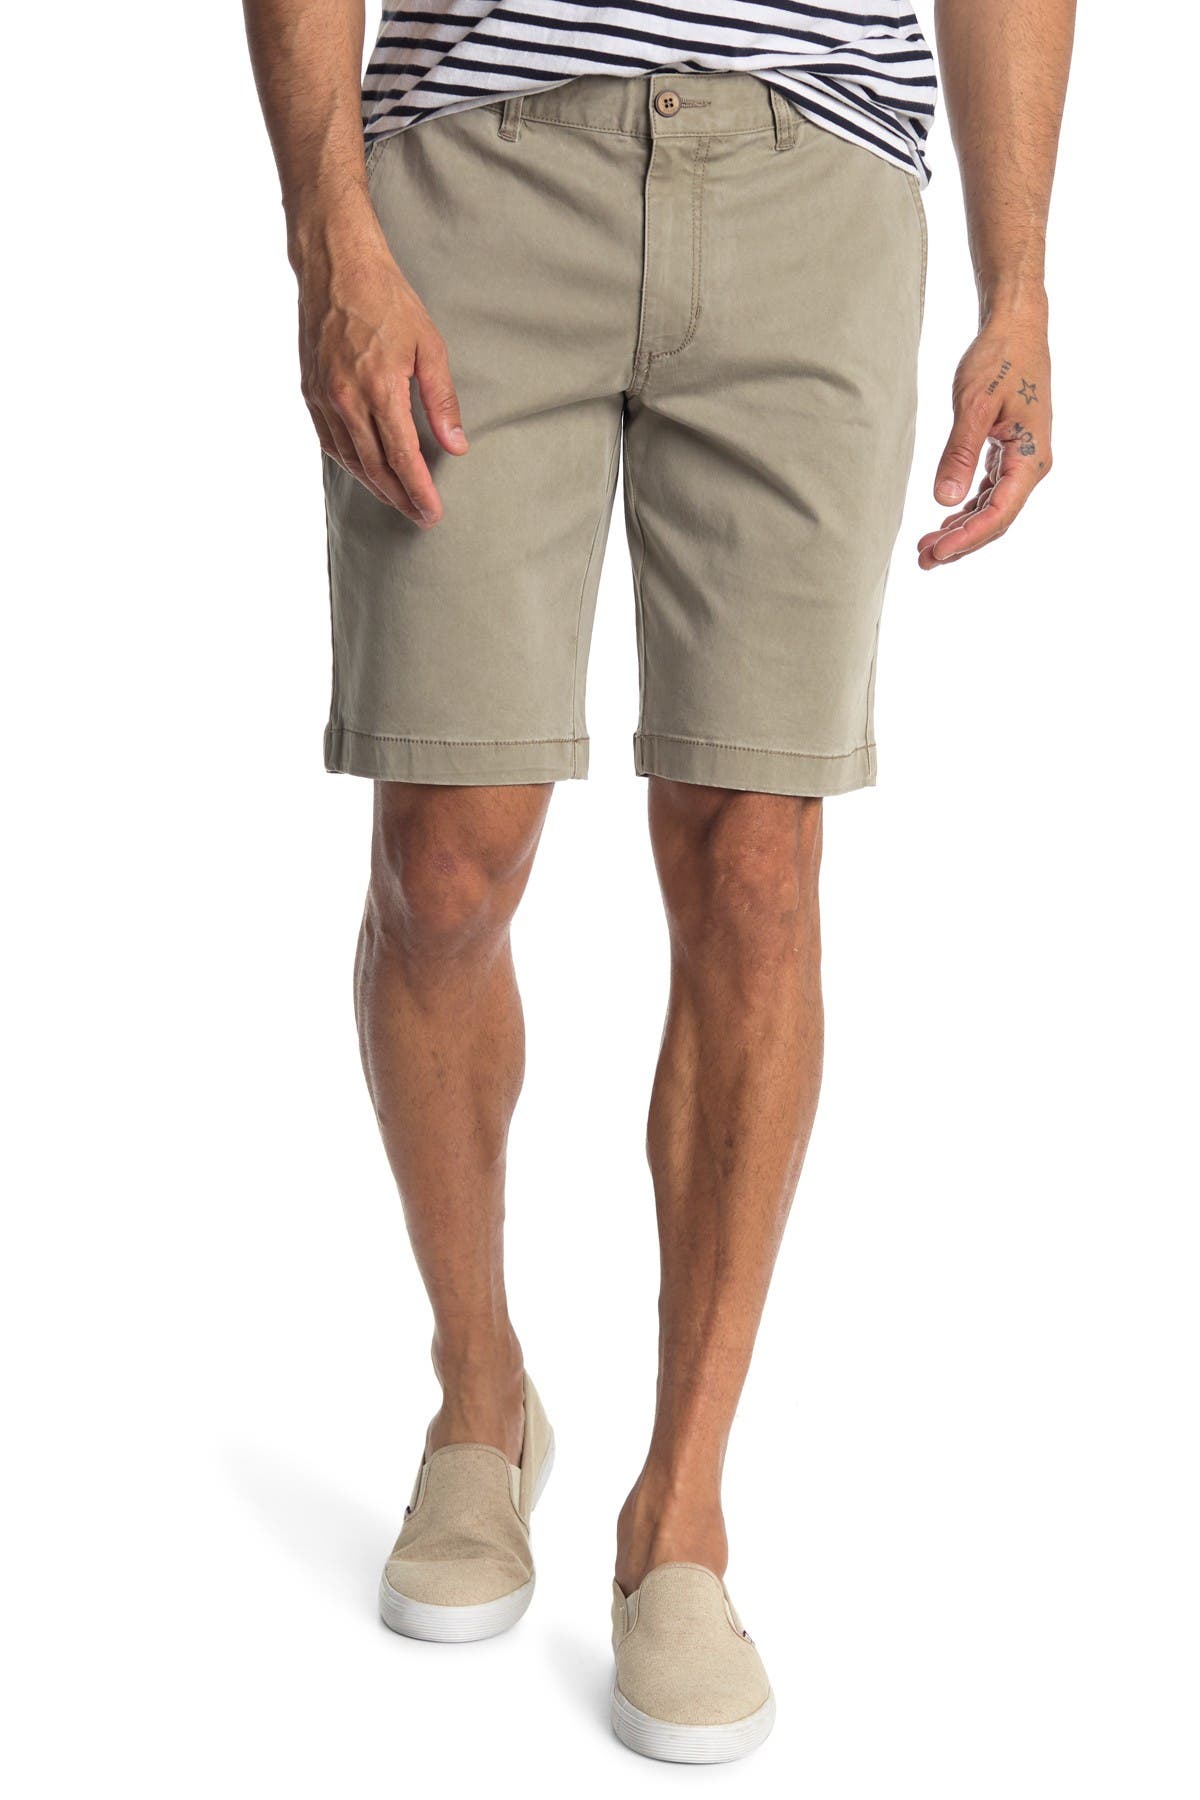 boracay shorts